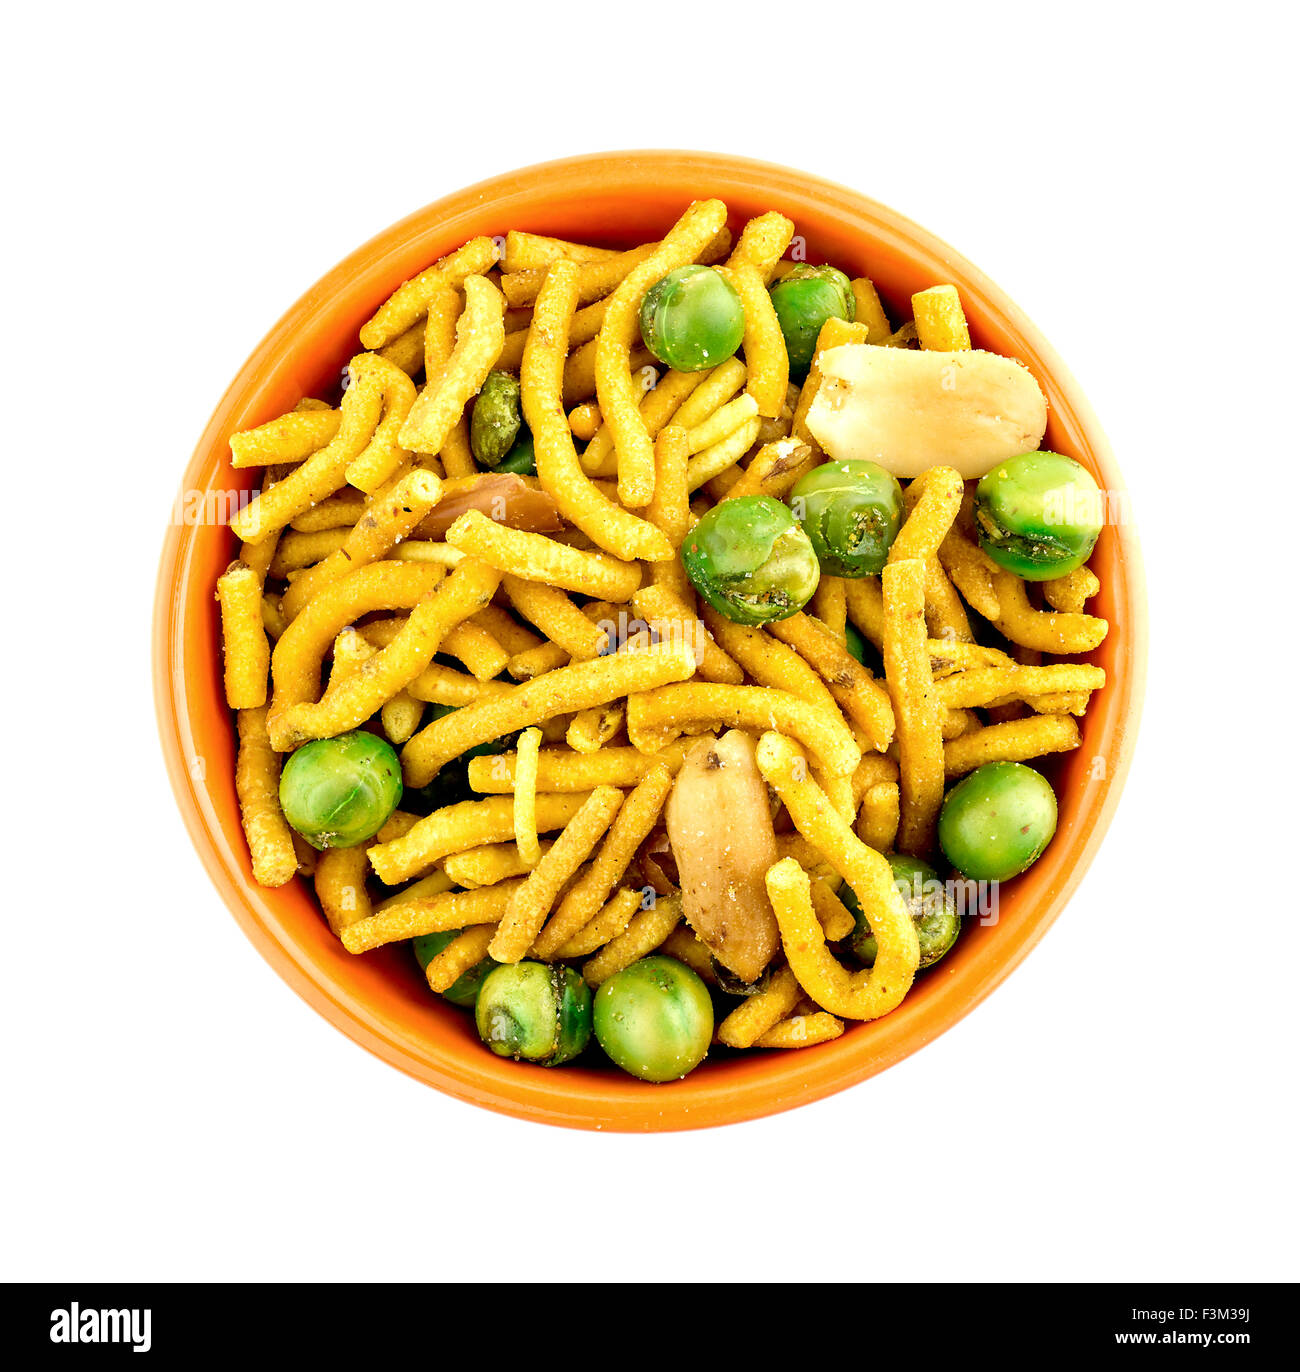 Vue aérienne de la cuvette de spicy tasty snack-chevda indien Banque D'Images